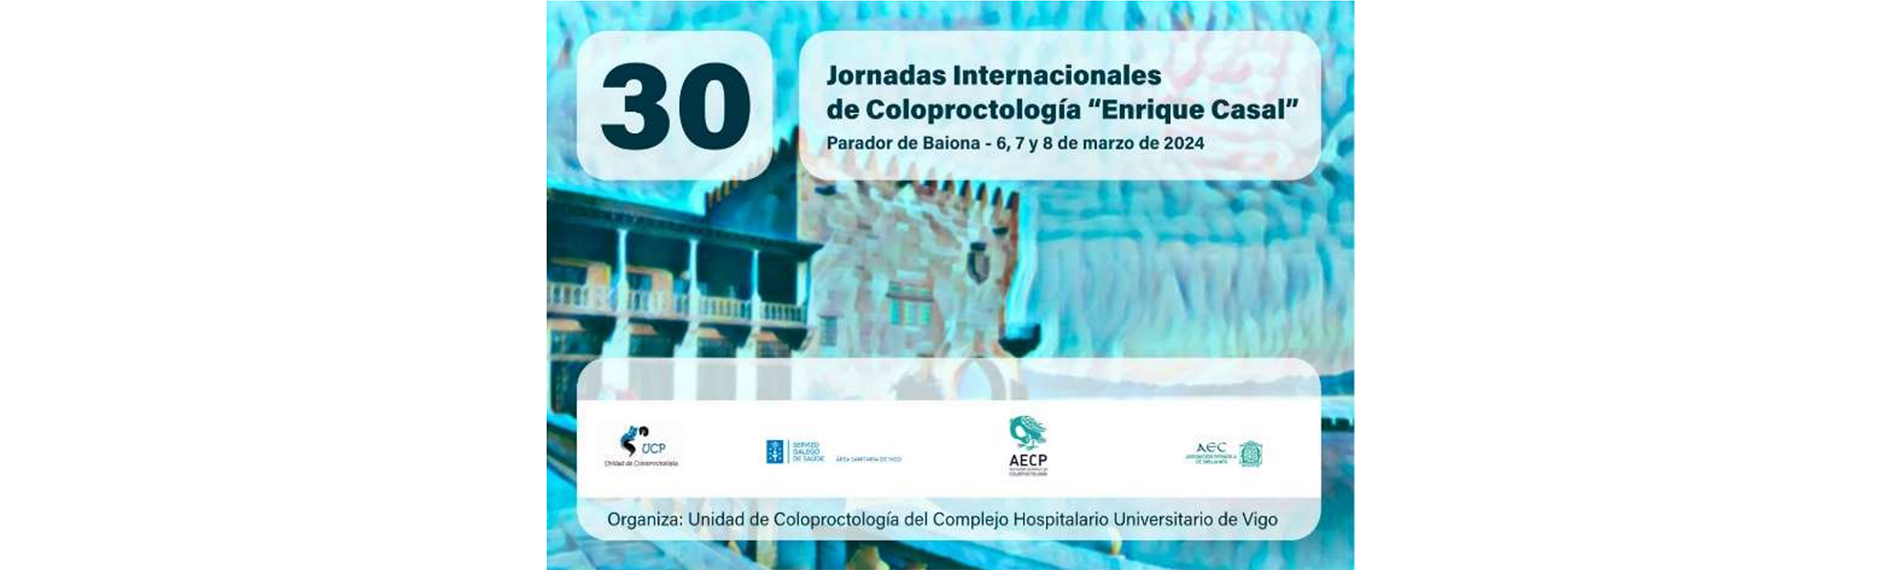 Jornadas Internacionales de Coloproctología Enrique Casal, 6-8 March 2024, Baiona